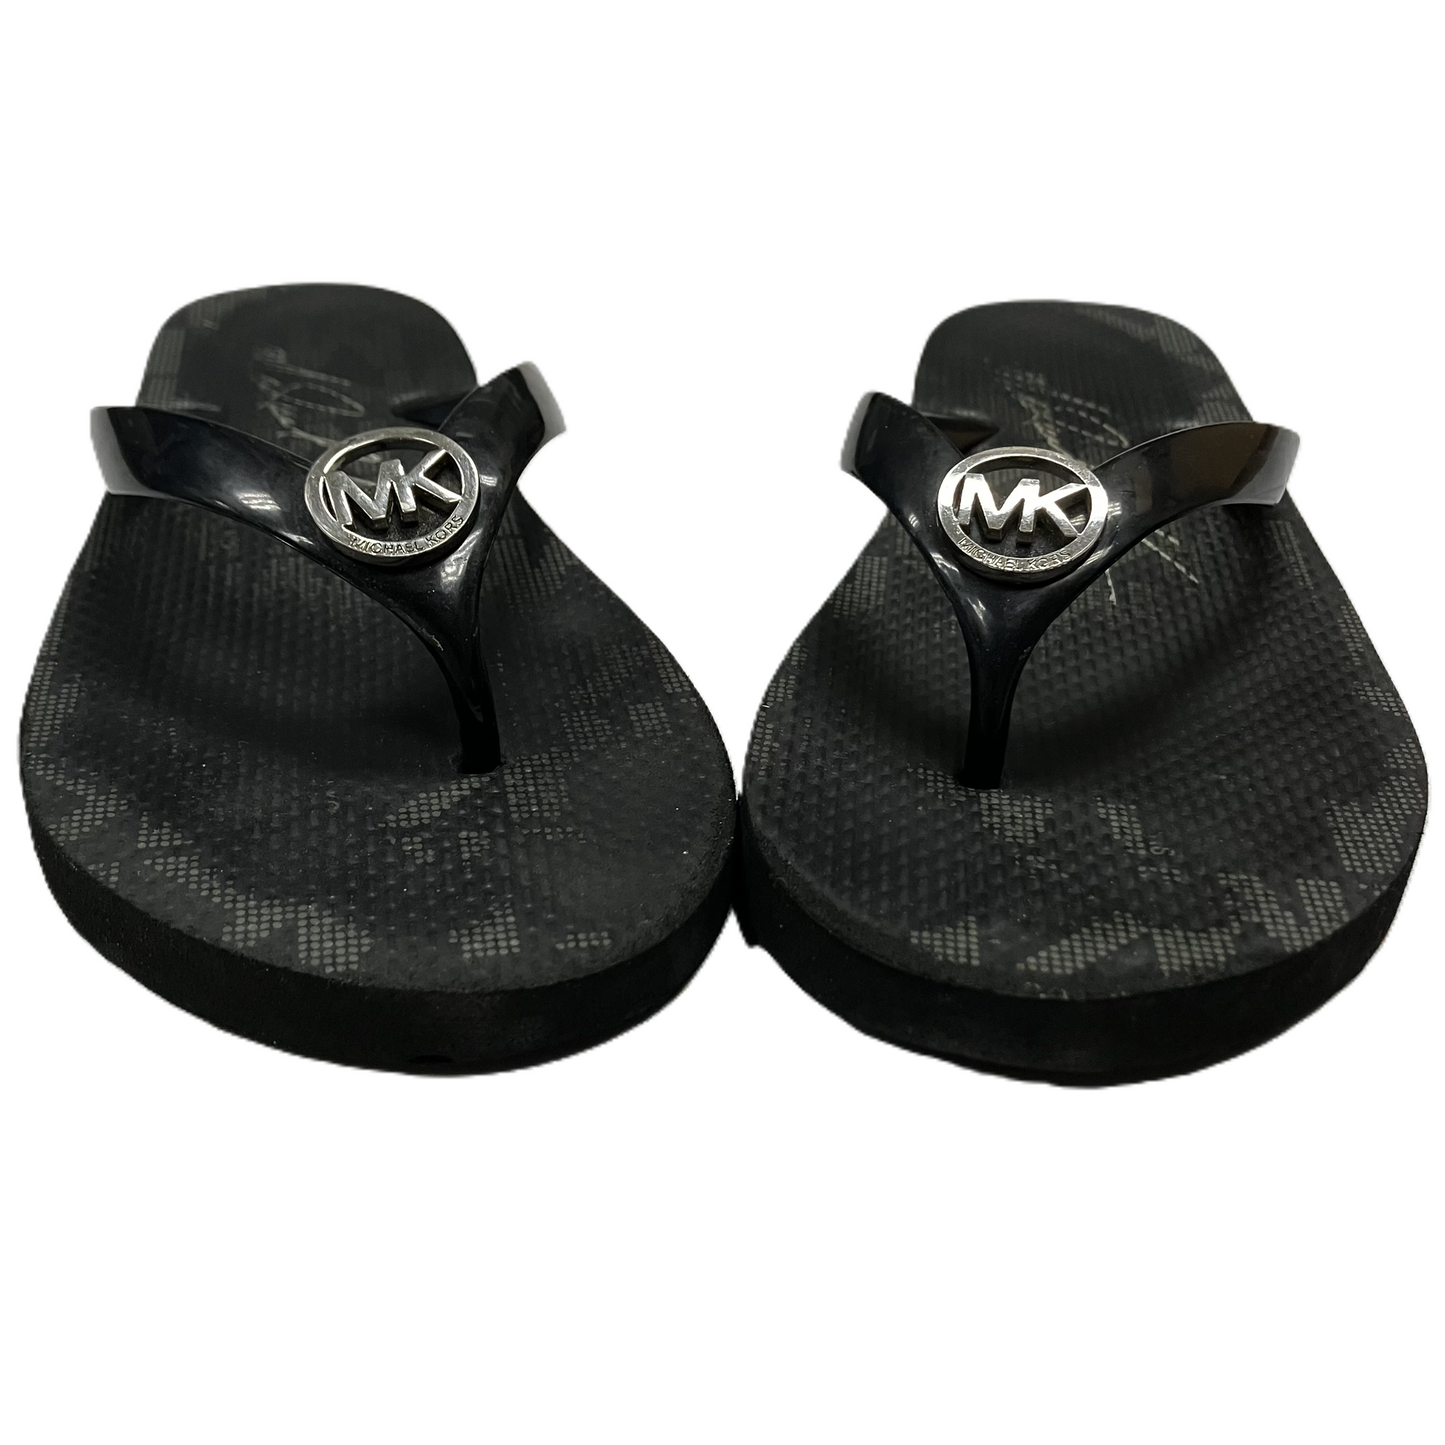 Black Sandals Flip Flops By Michael Kors, Size: 9